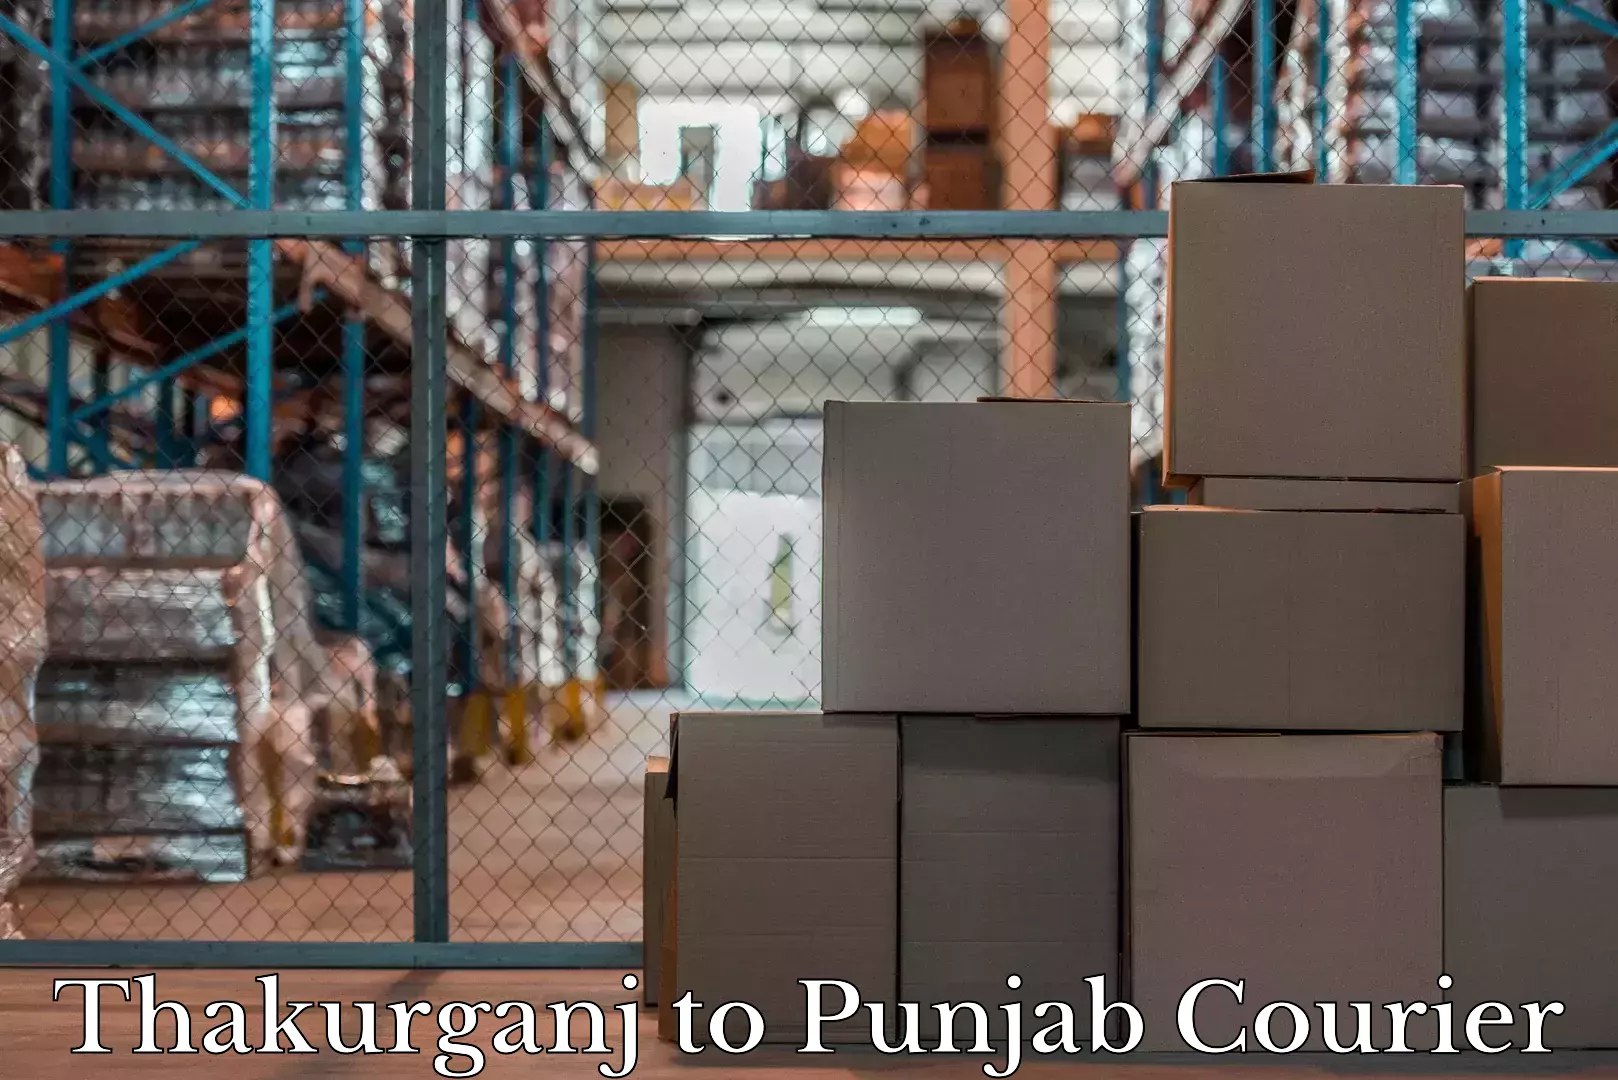 Baggage transport coordination in Thakurganj to Punjab